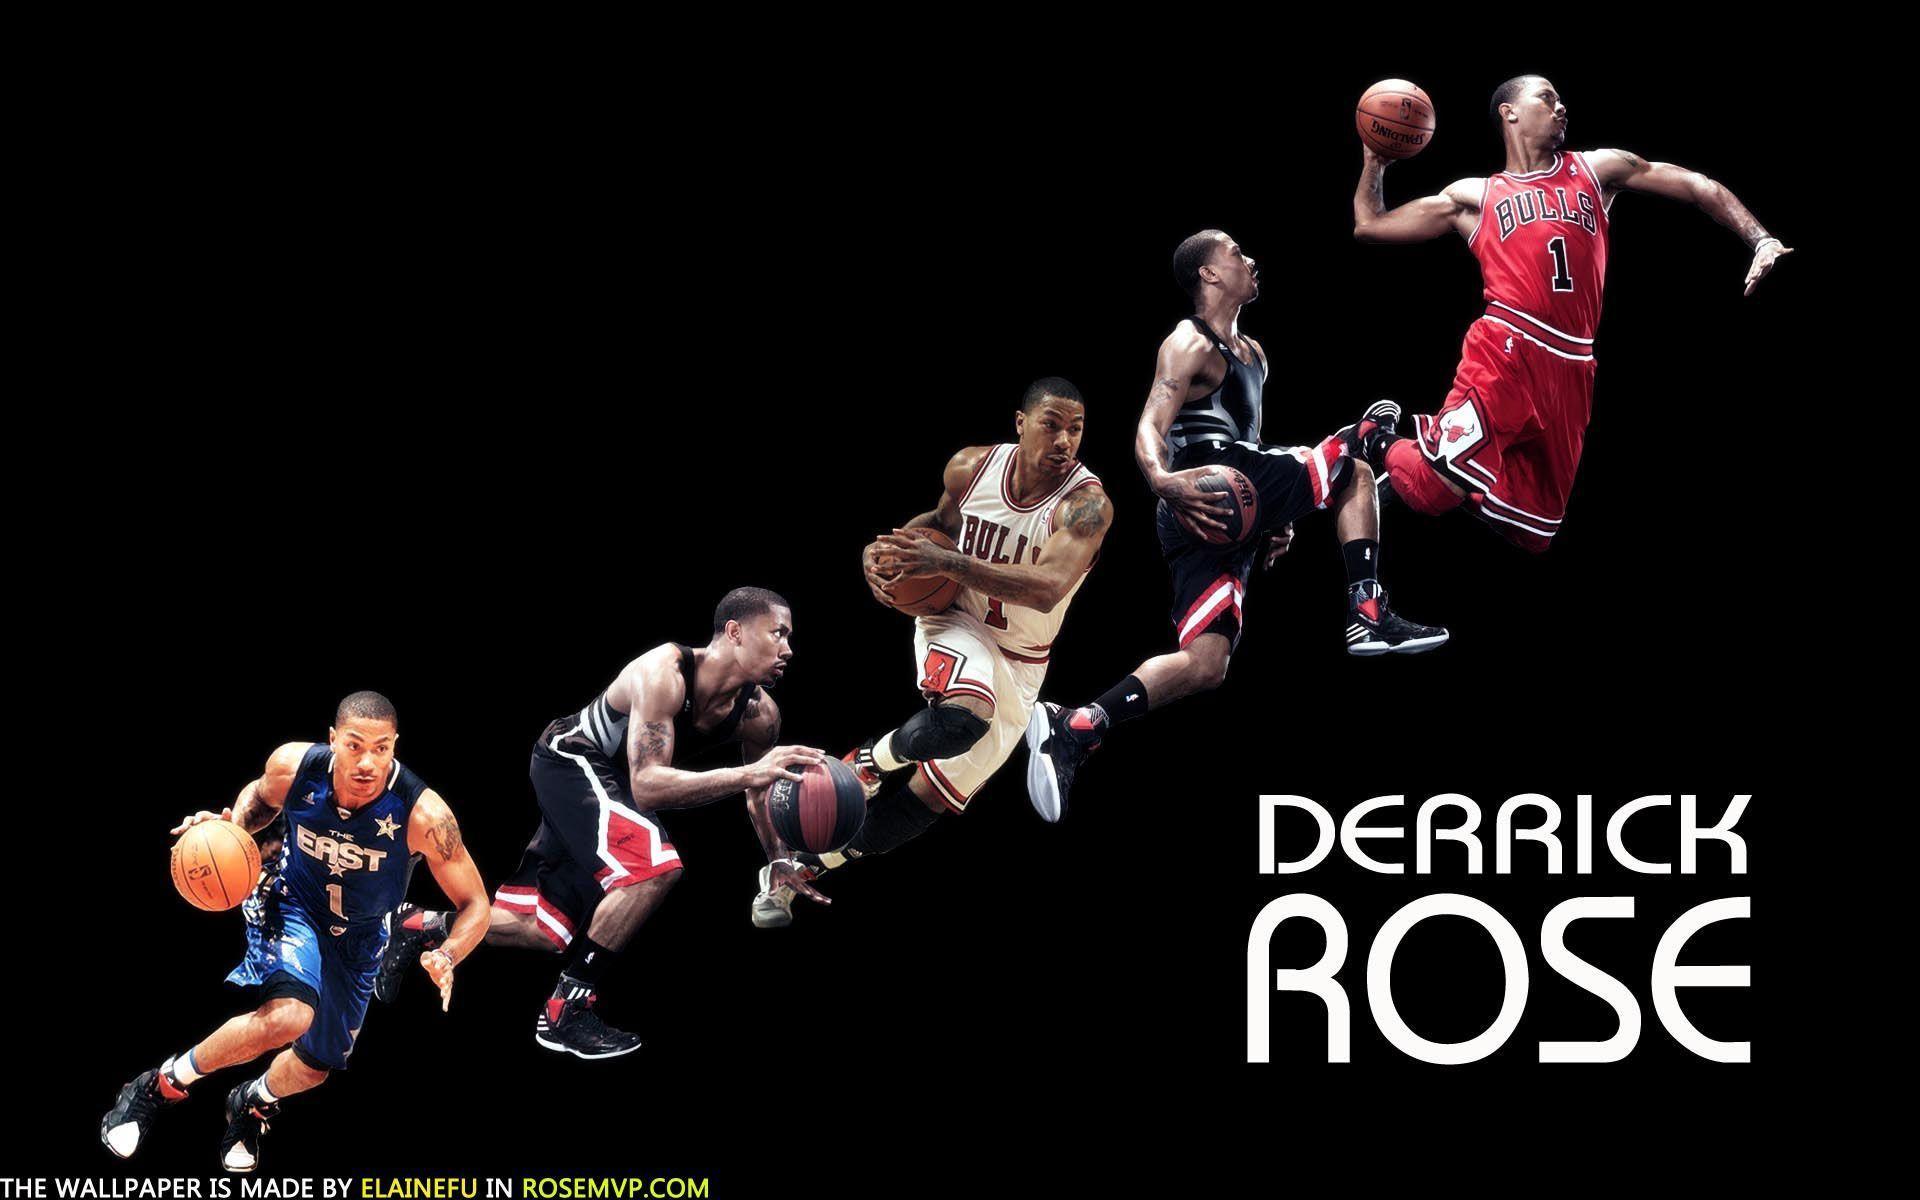 Derrick Rose Wallpaper HD. Basketball Wallpaper HD